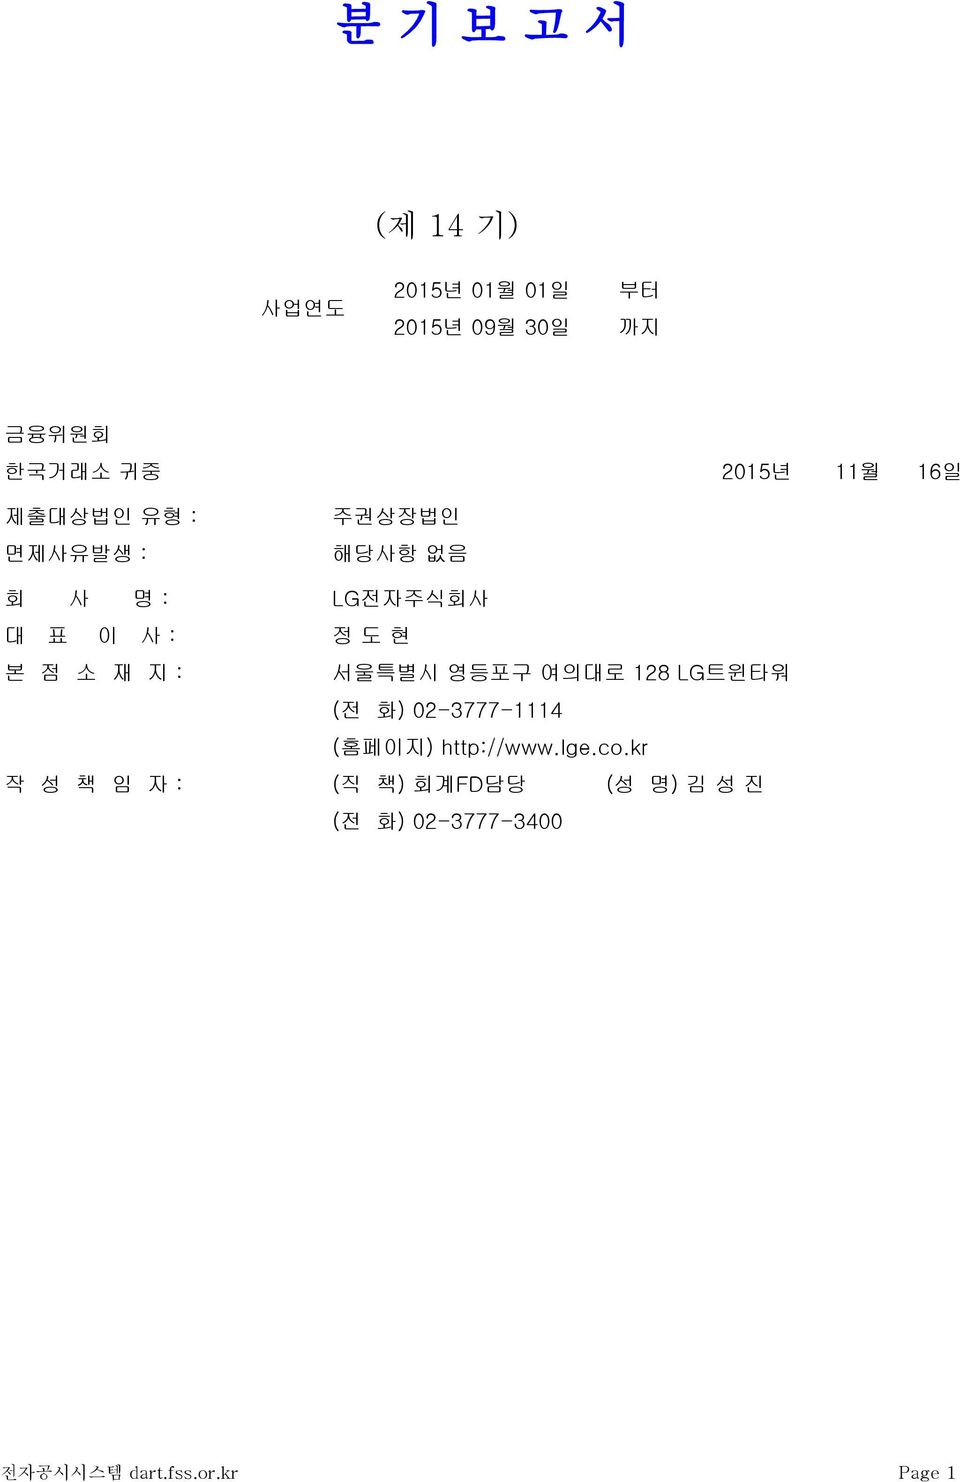 소 재 지 : 서울특별시 영등포구 여의대로 128 LG트윈타워 (전 화) 02-3777-1114 (홈페이지) http://www.lge.co.